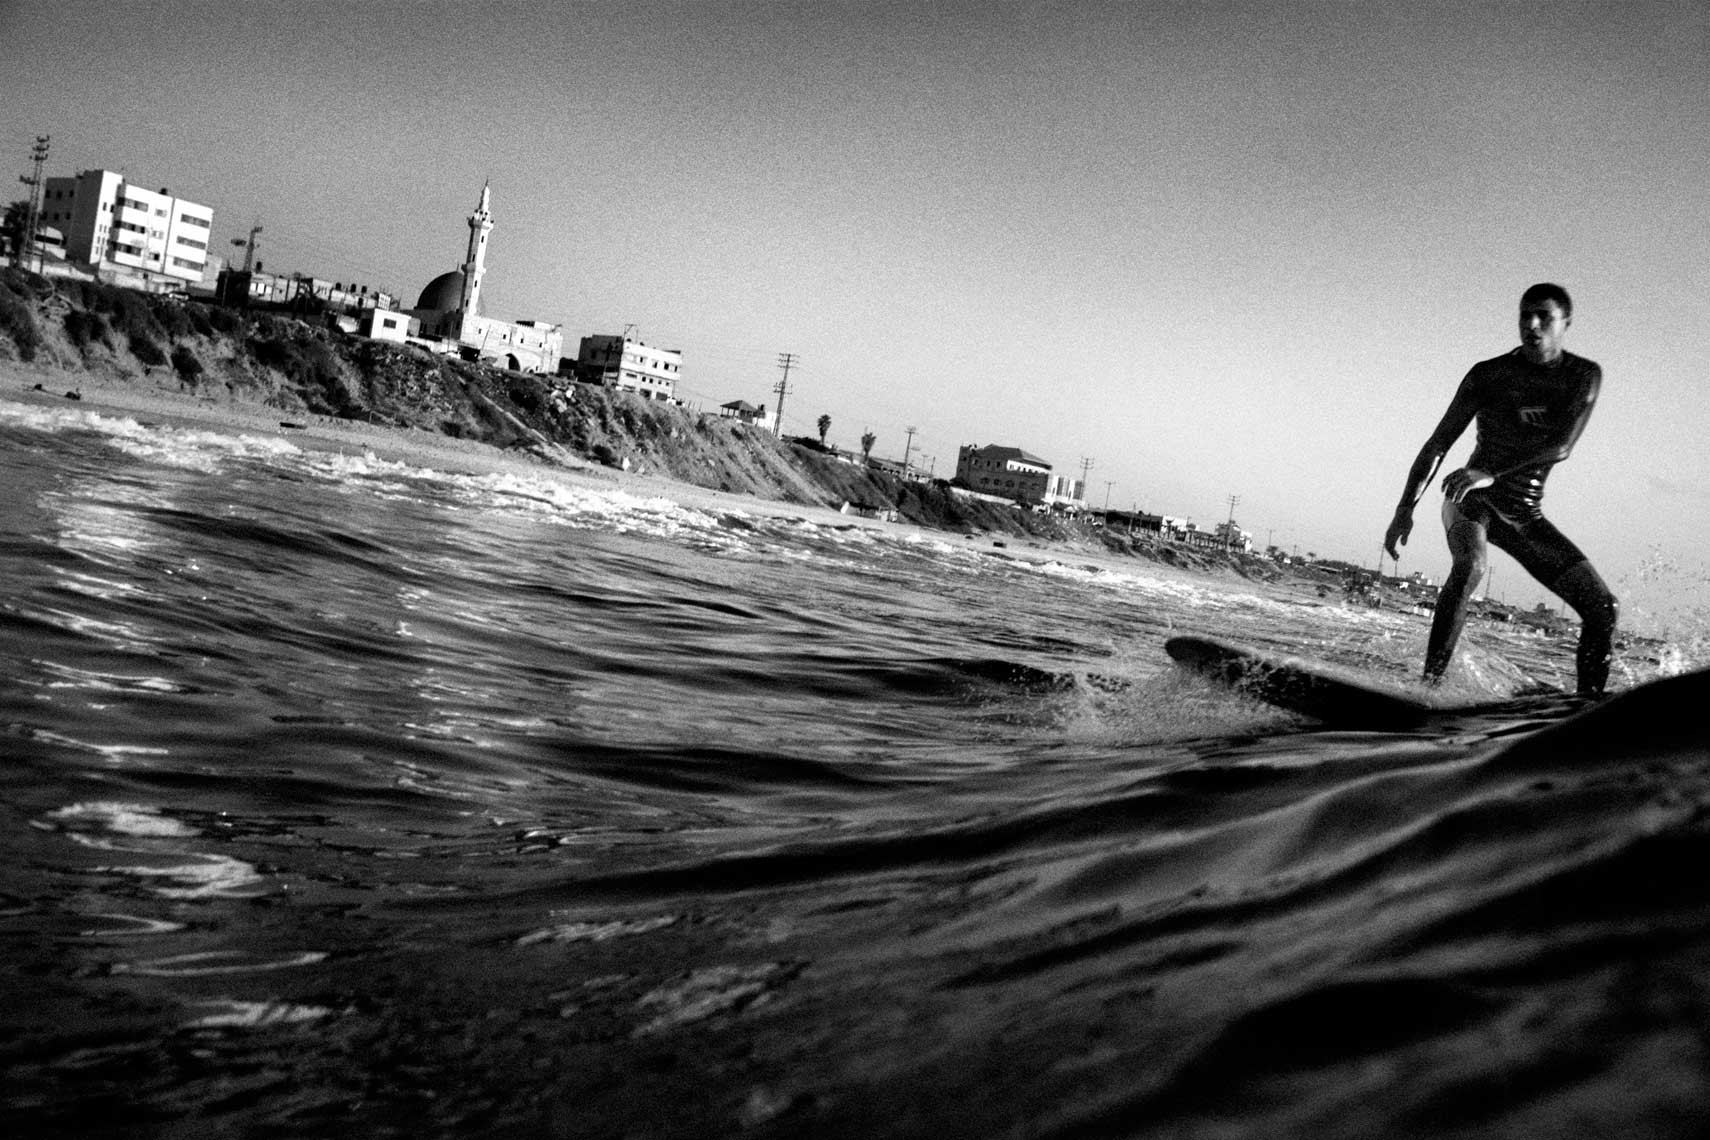 Gaza Surf